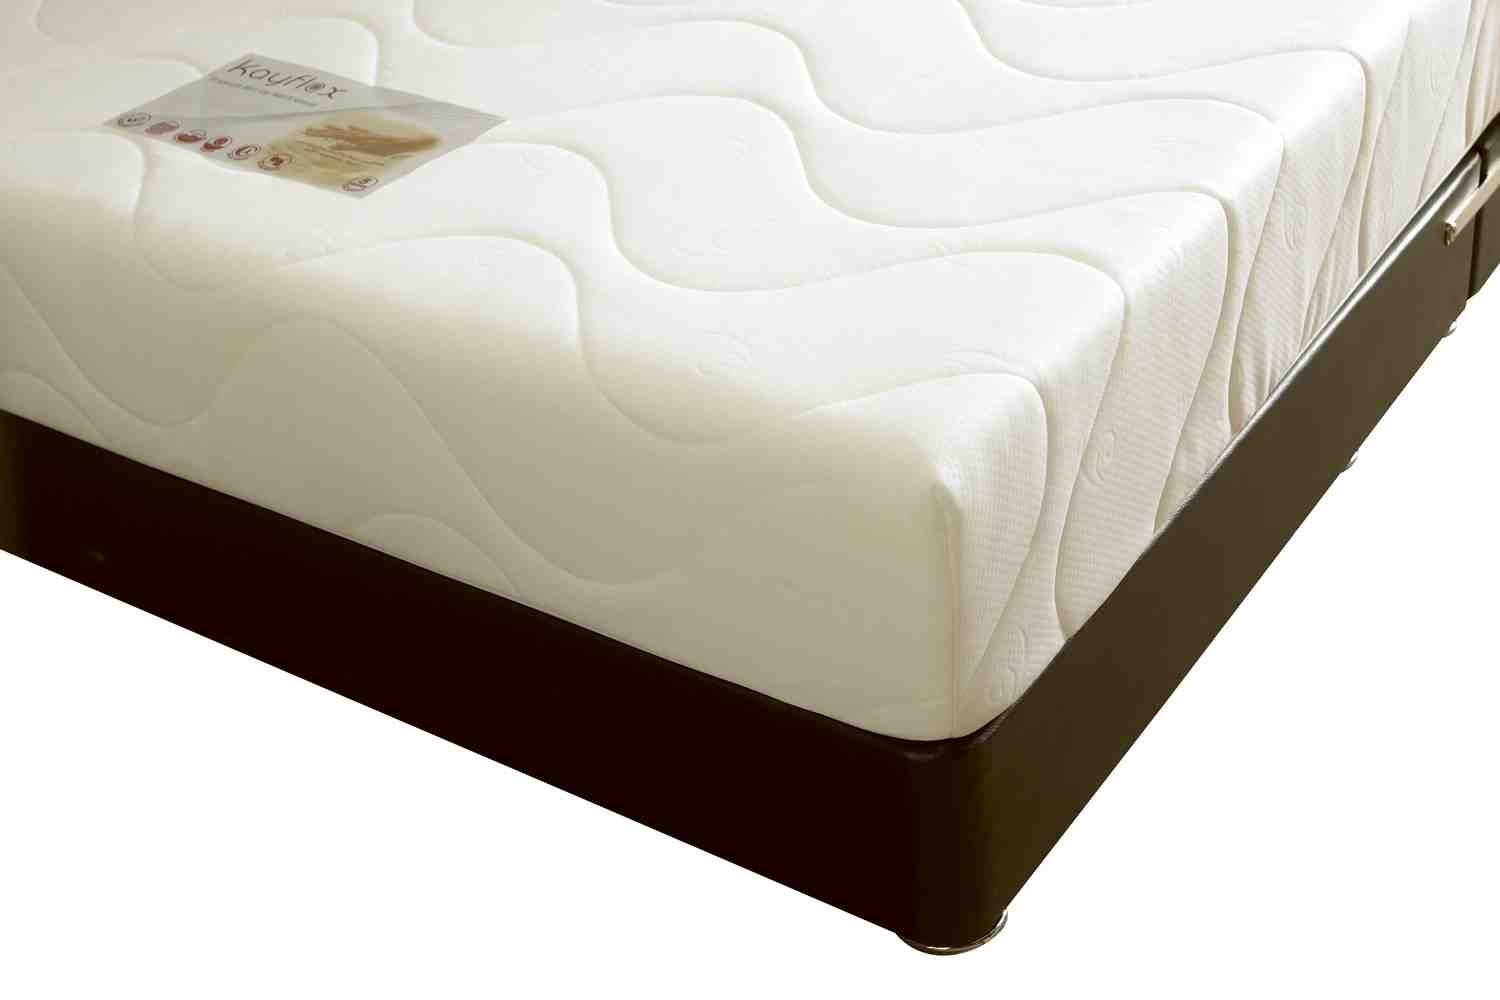 cheap foam mattress cover